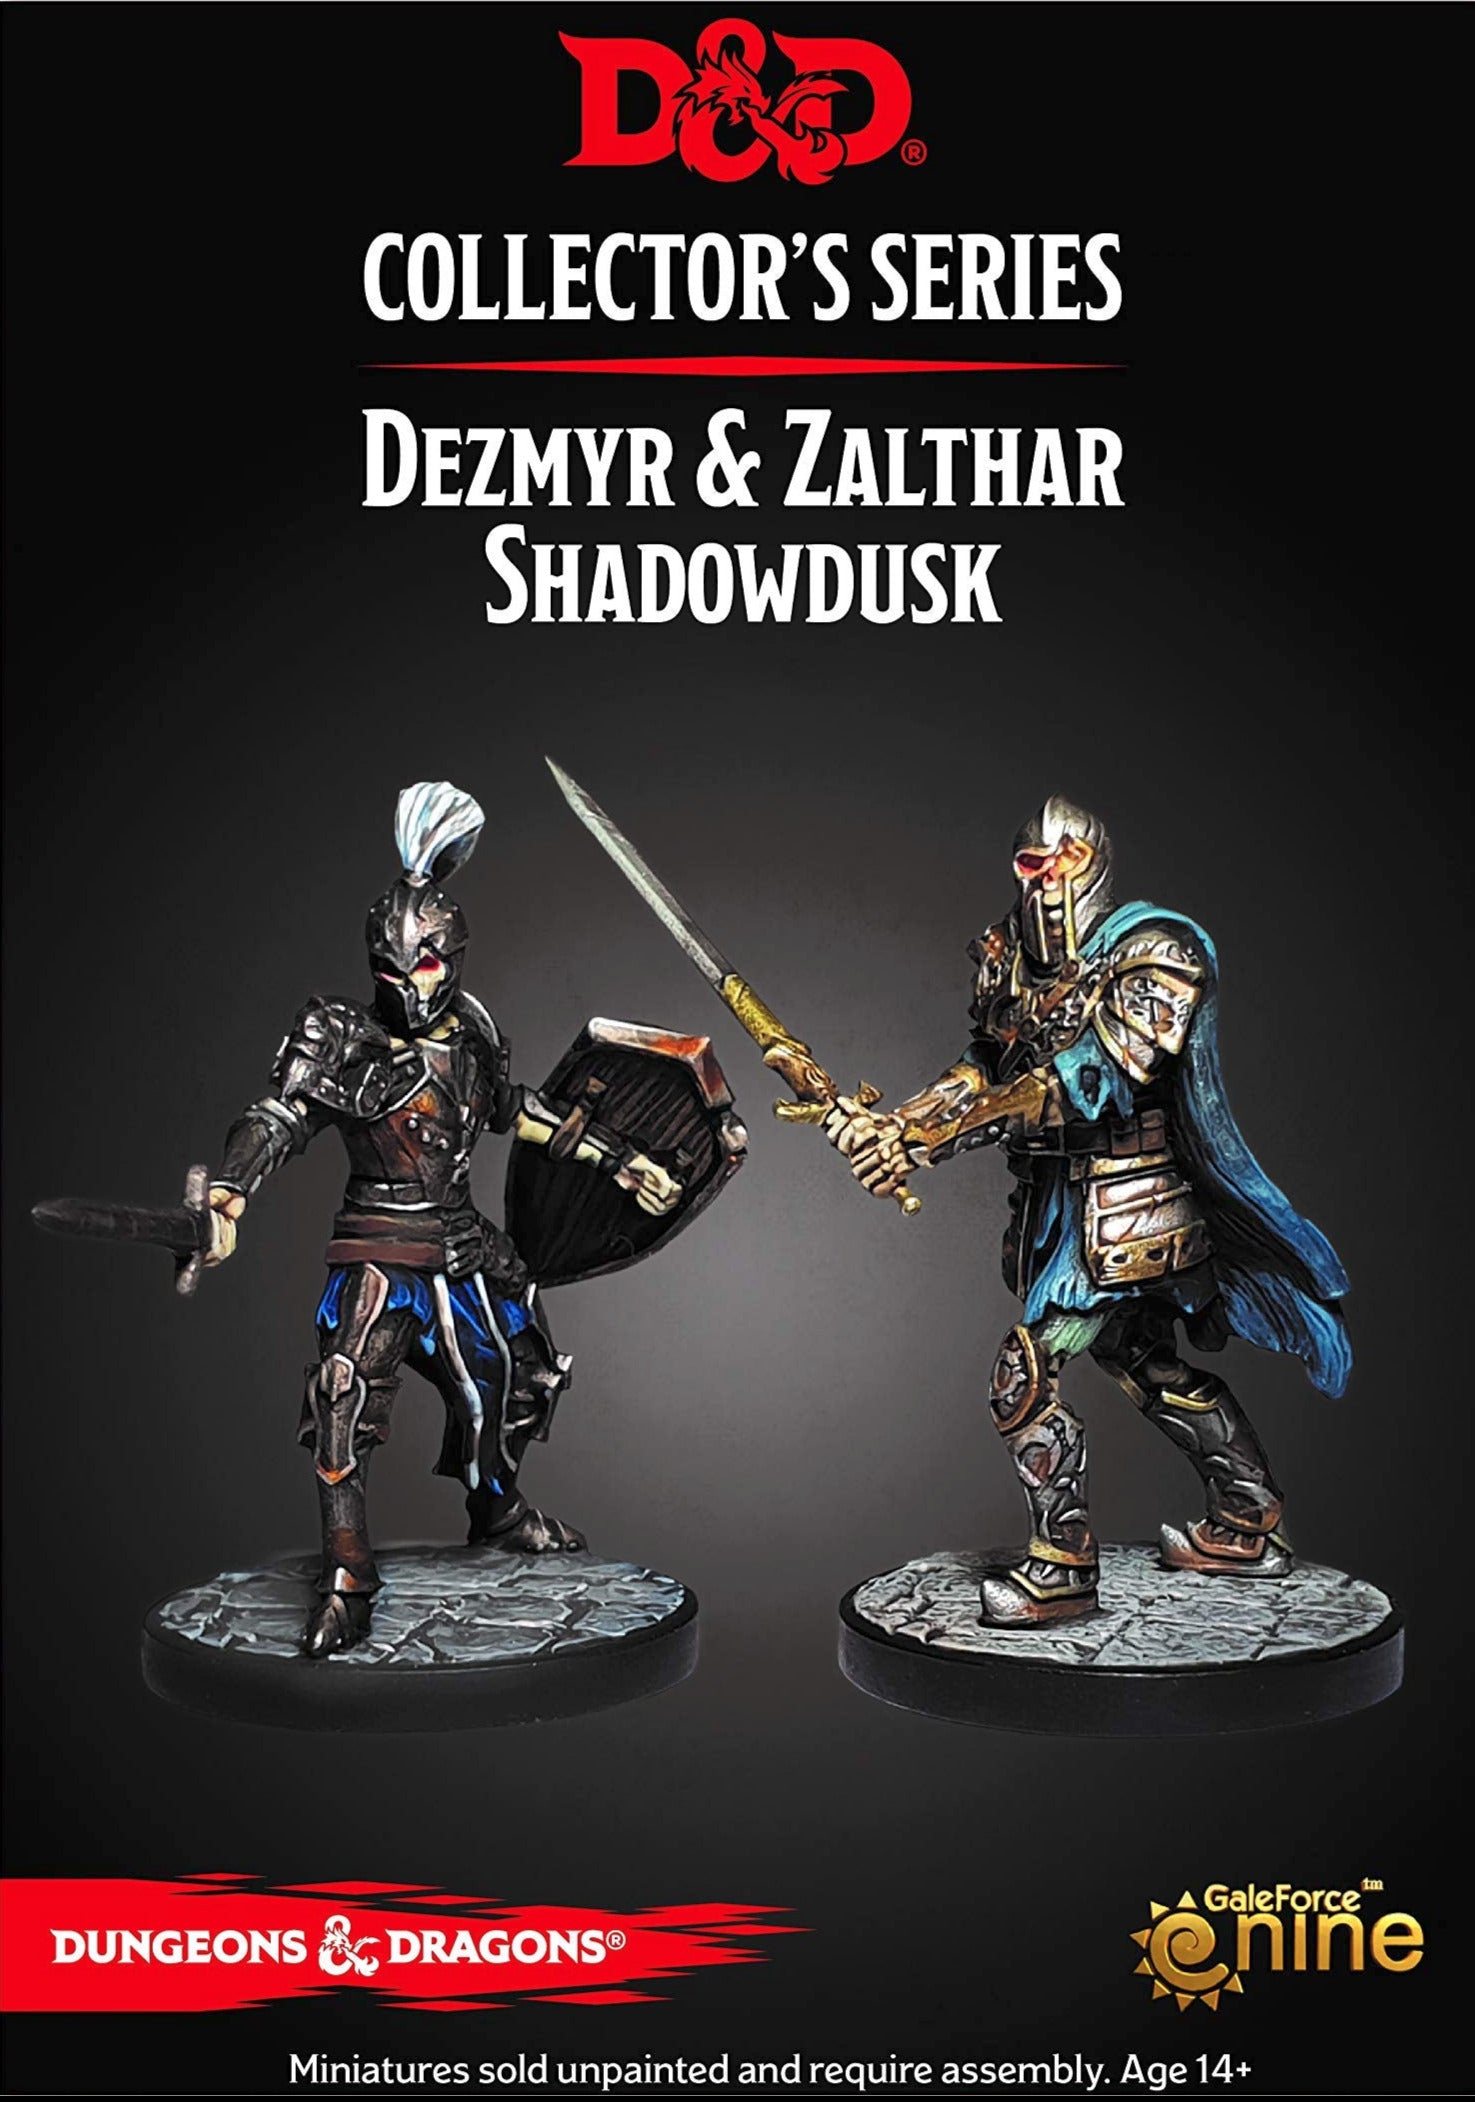 Dezmyr & Zalthar Shadowdusk